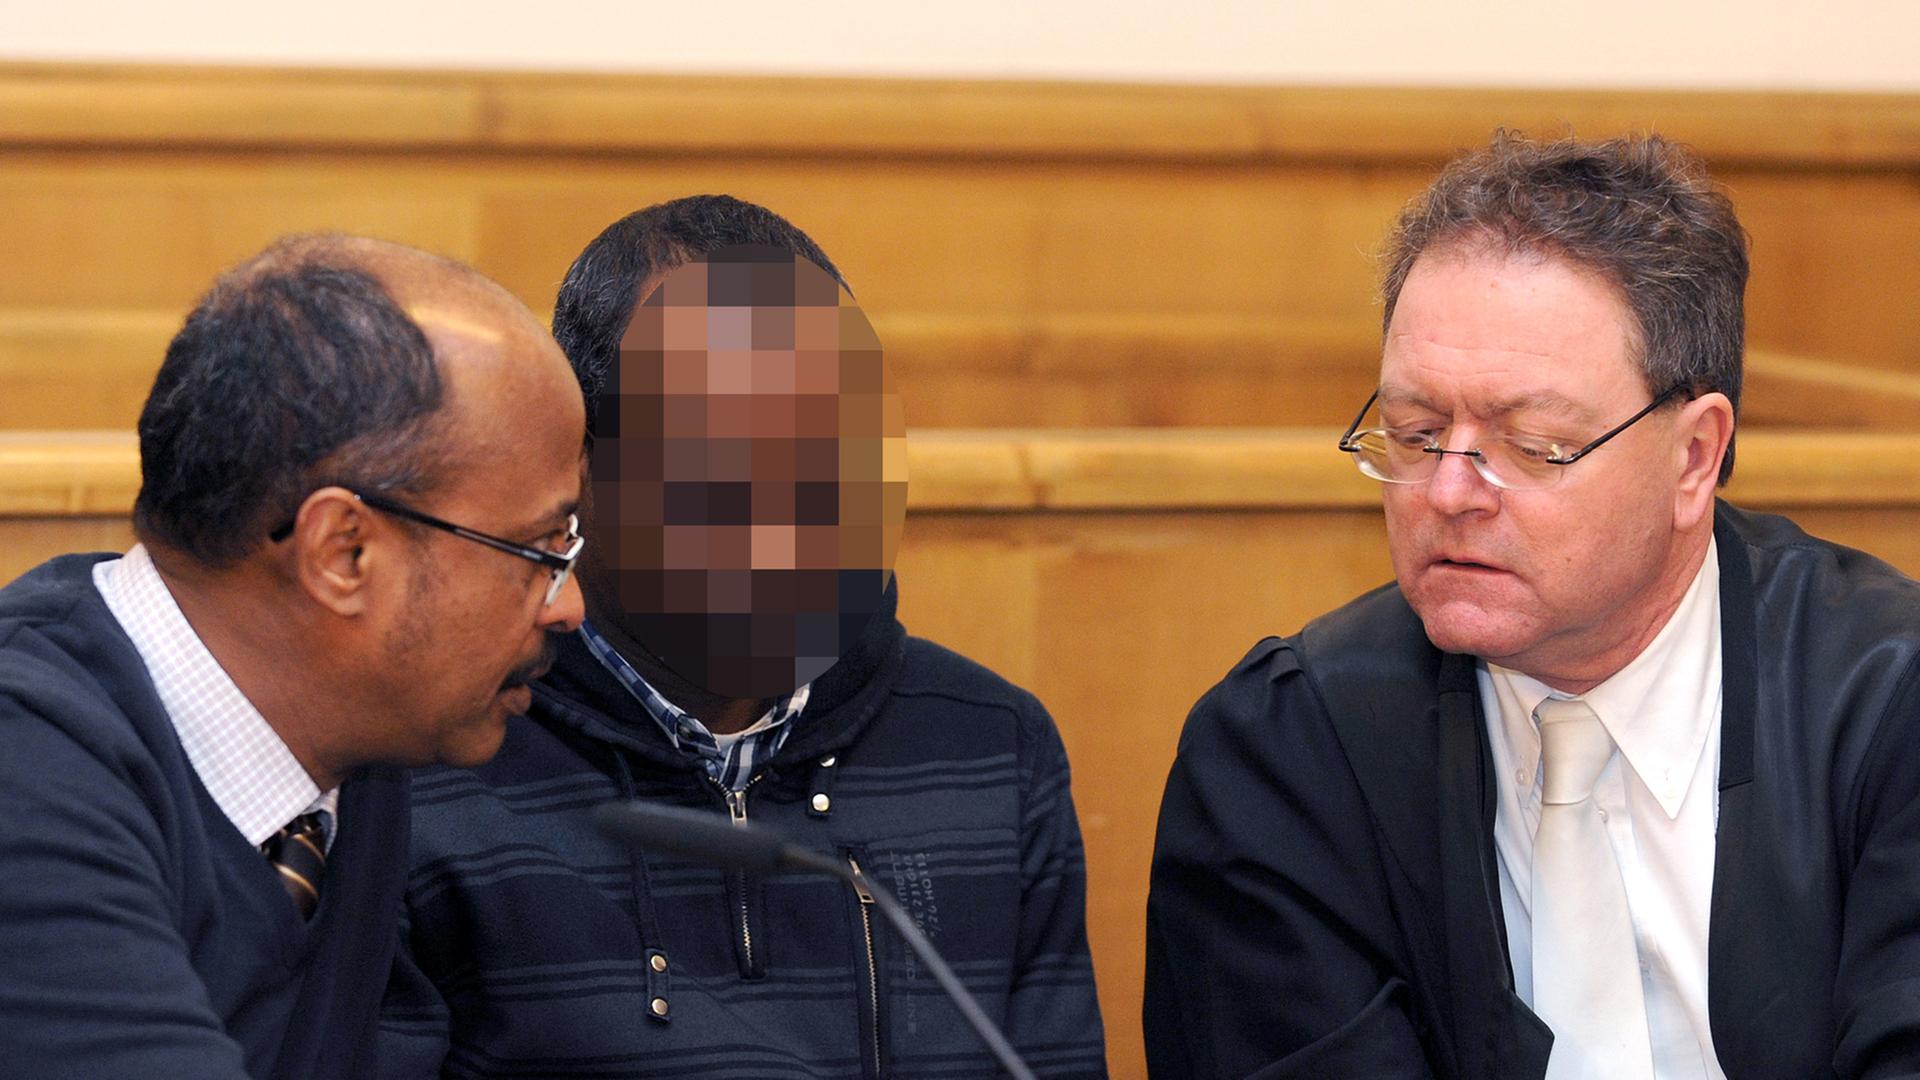 Der angeklagte Somalier umringt von seinem Dolmetscher und seinem Verteidiger